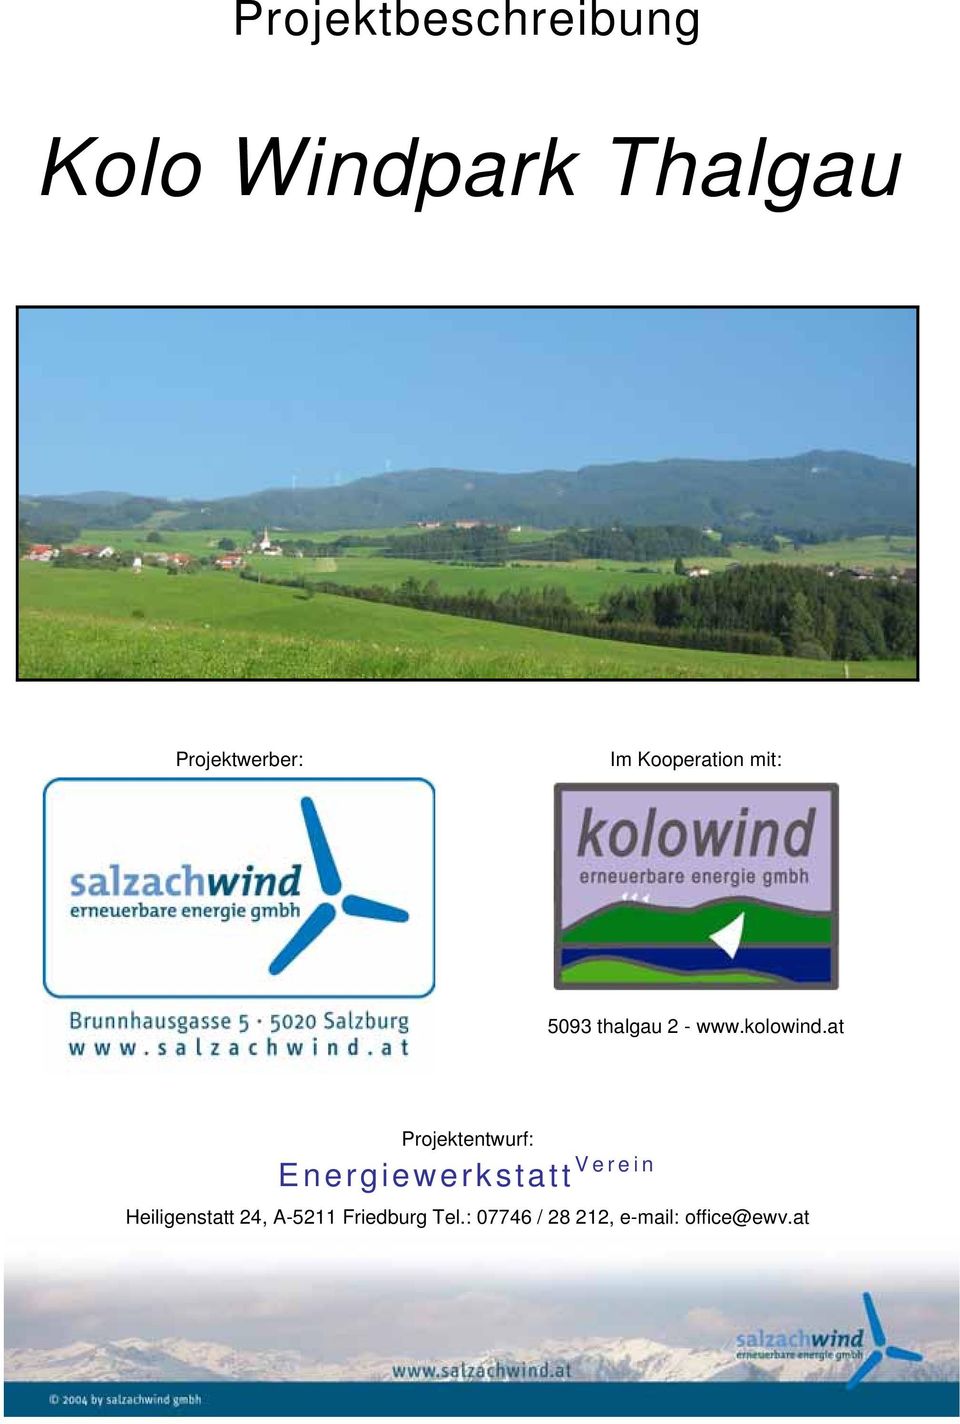 at Projektentwurf: Energiewerkstatt Verein Heiligenstatt